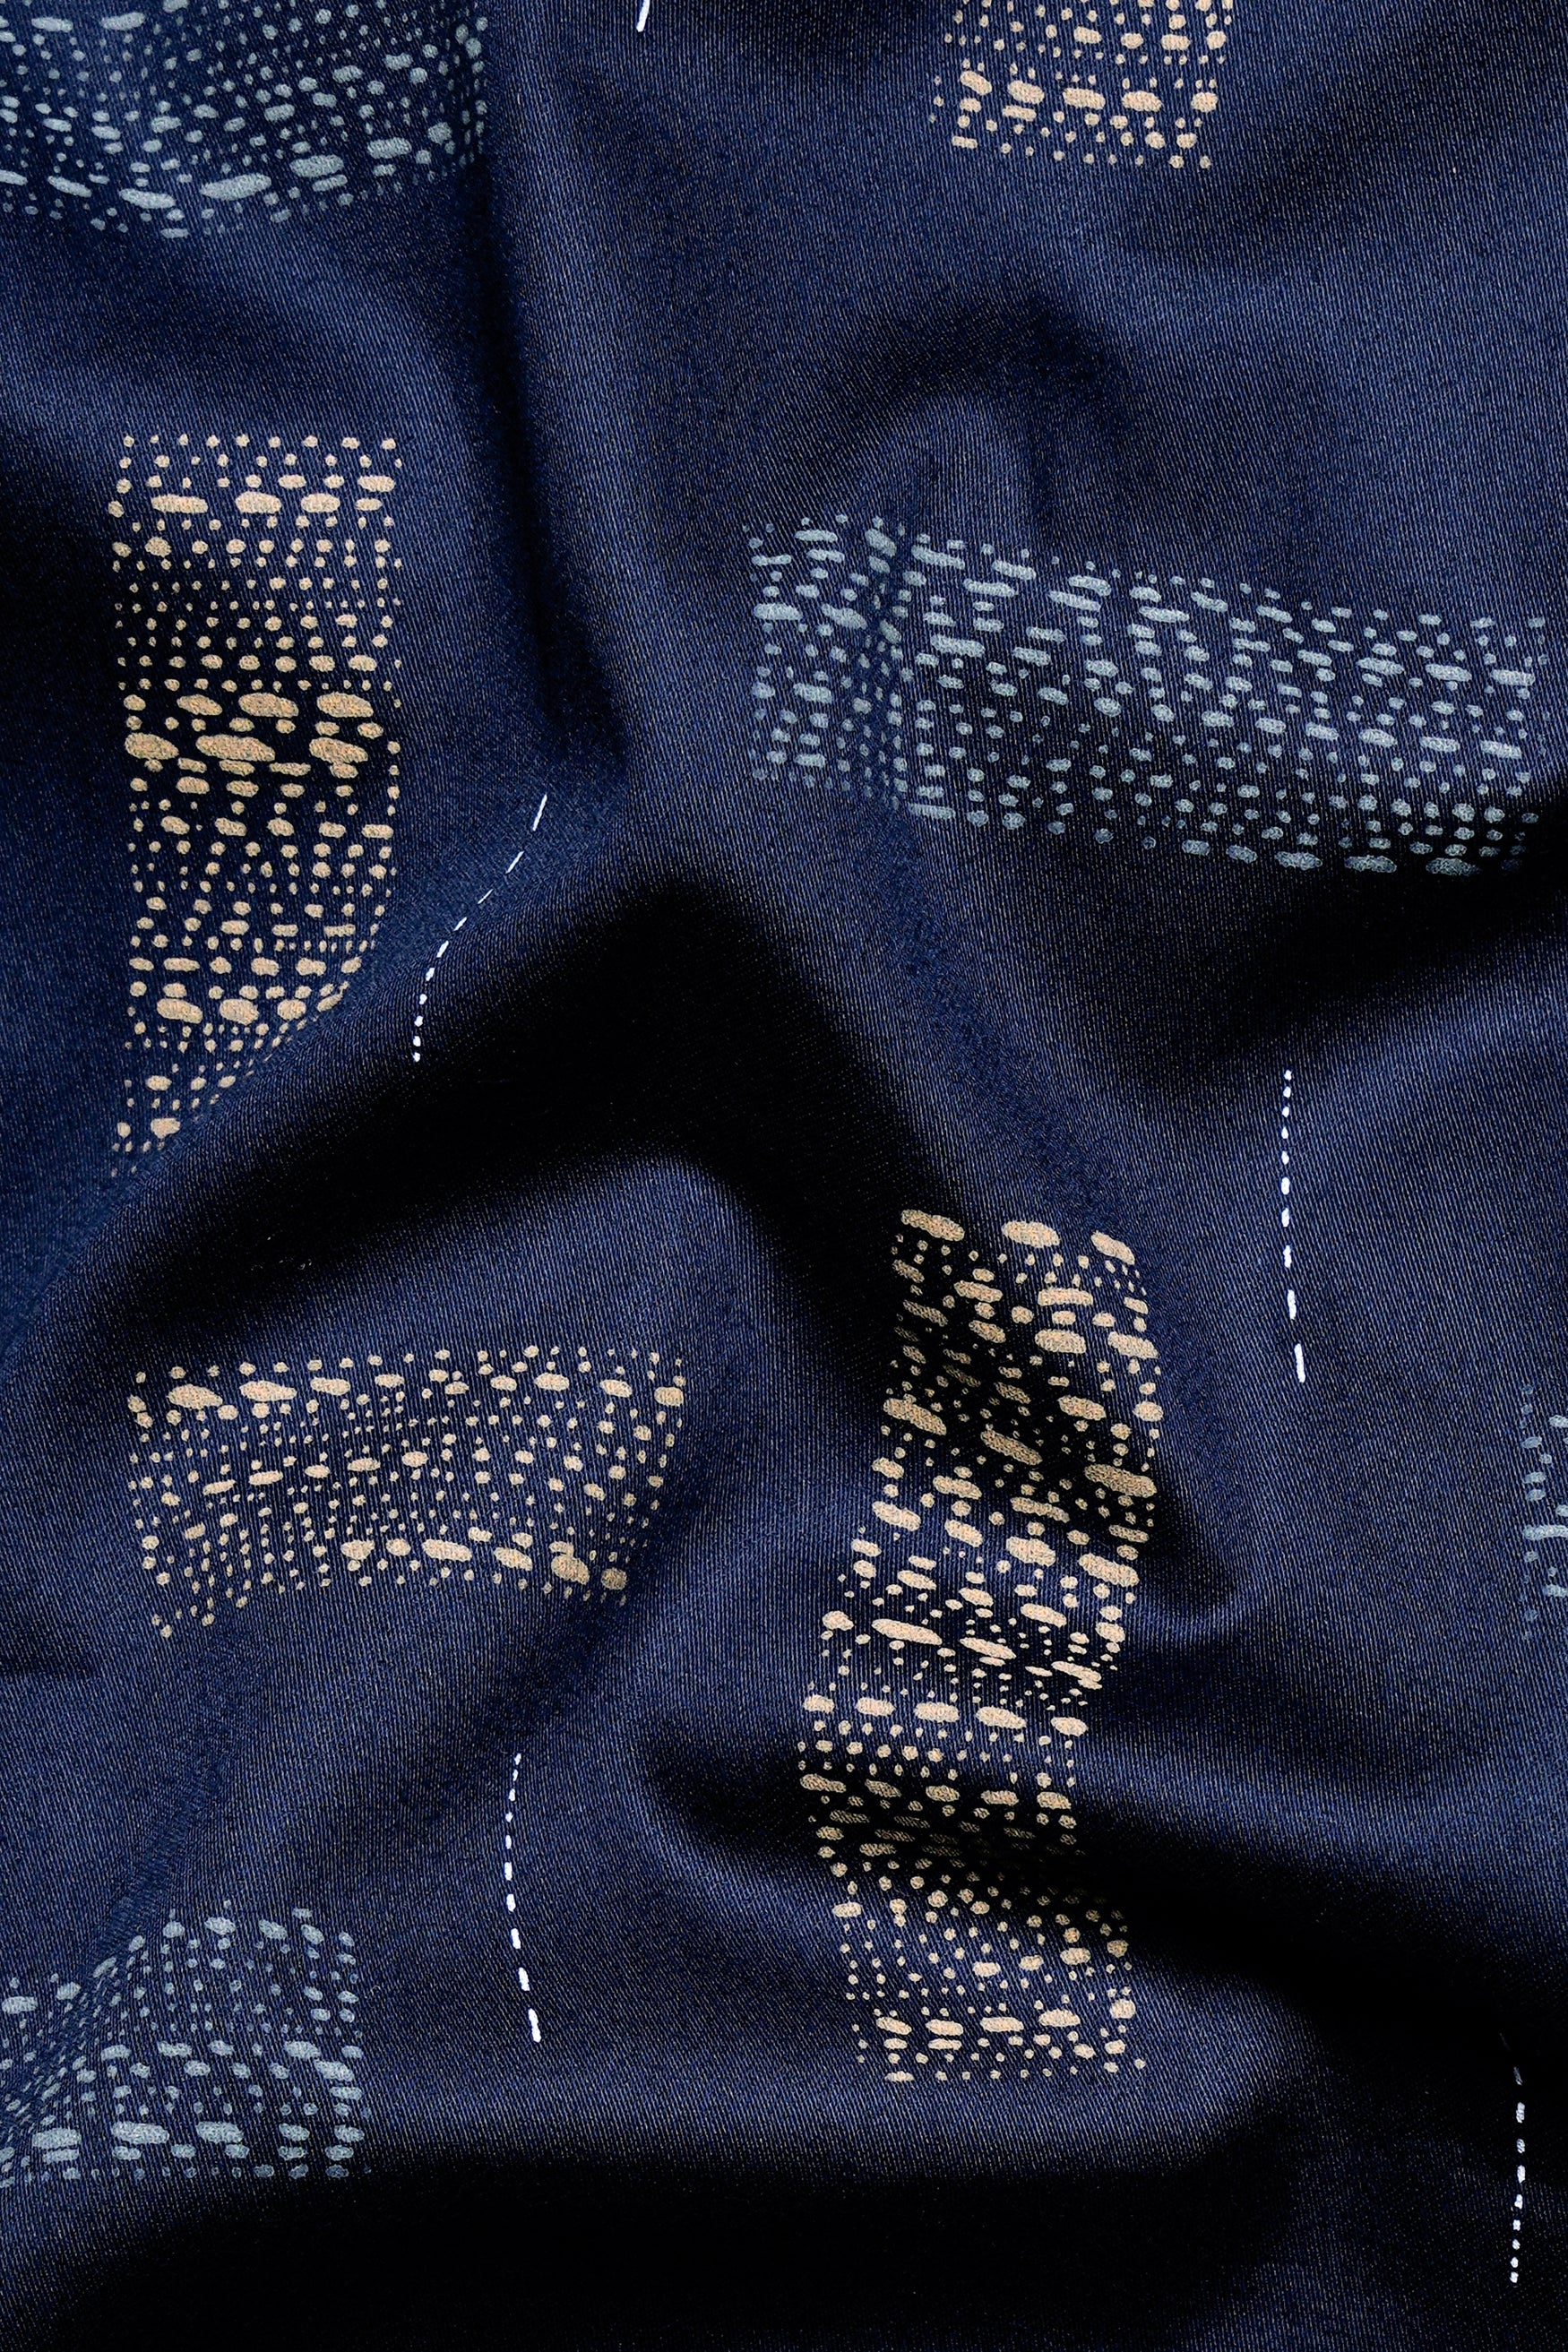 Mirage Navy Blue Printed Super Soft Premium Cotton Shirt